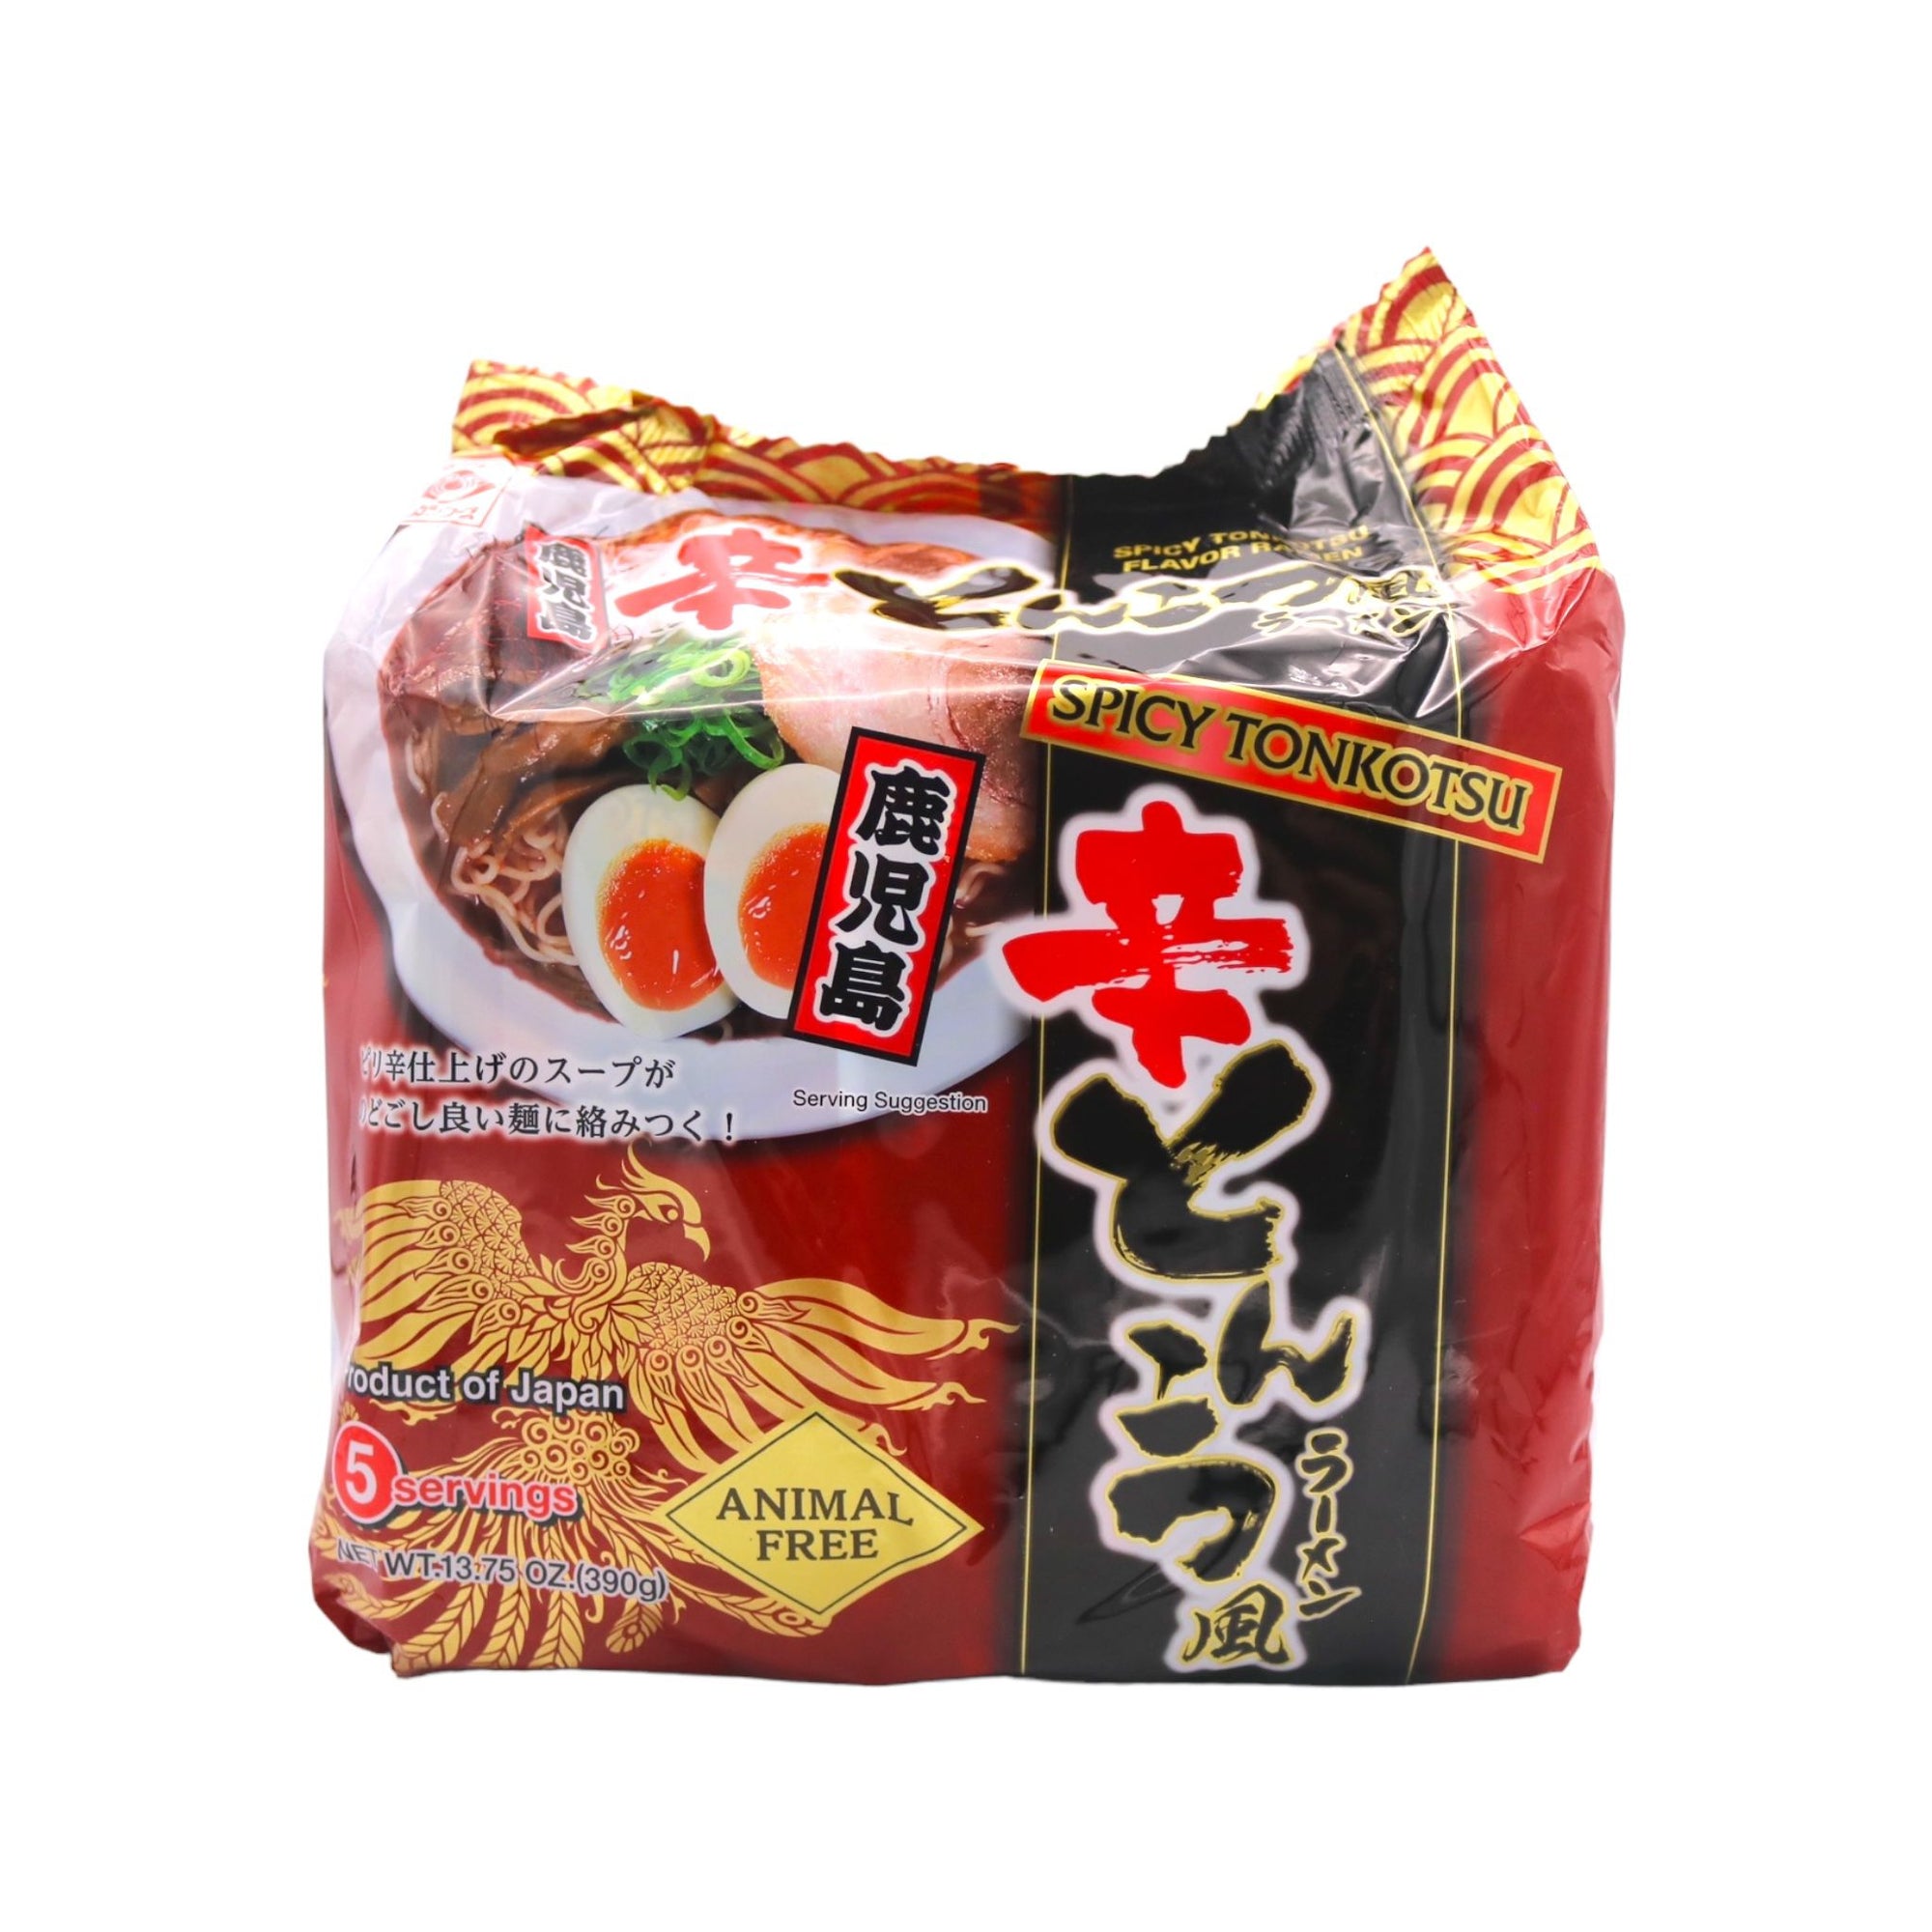 Higashimaru Kagoshima Ramen Spicy Tonkotsu Flavour (Animal Free) (78g*5 Servings) 390g